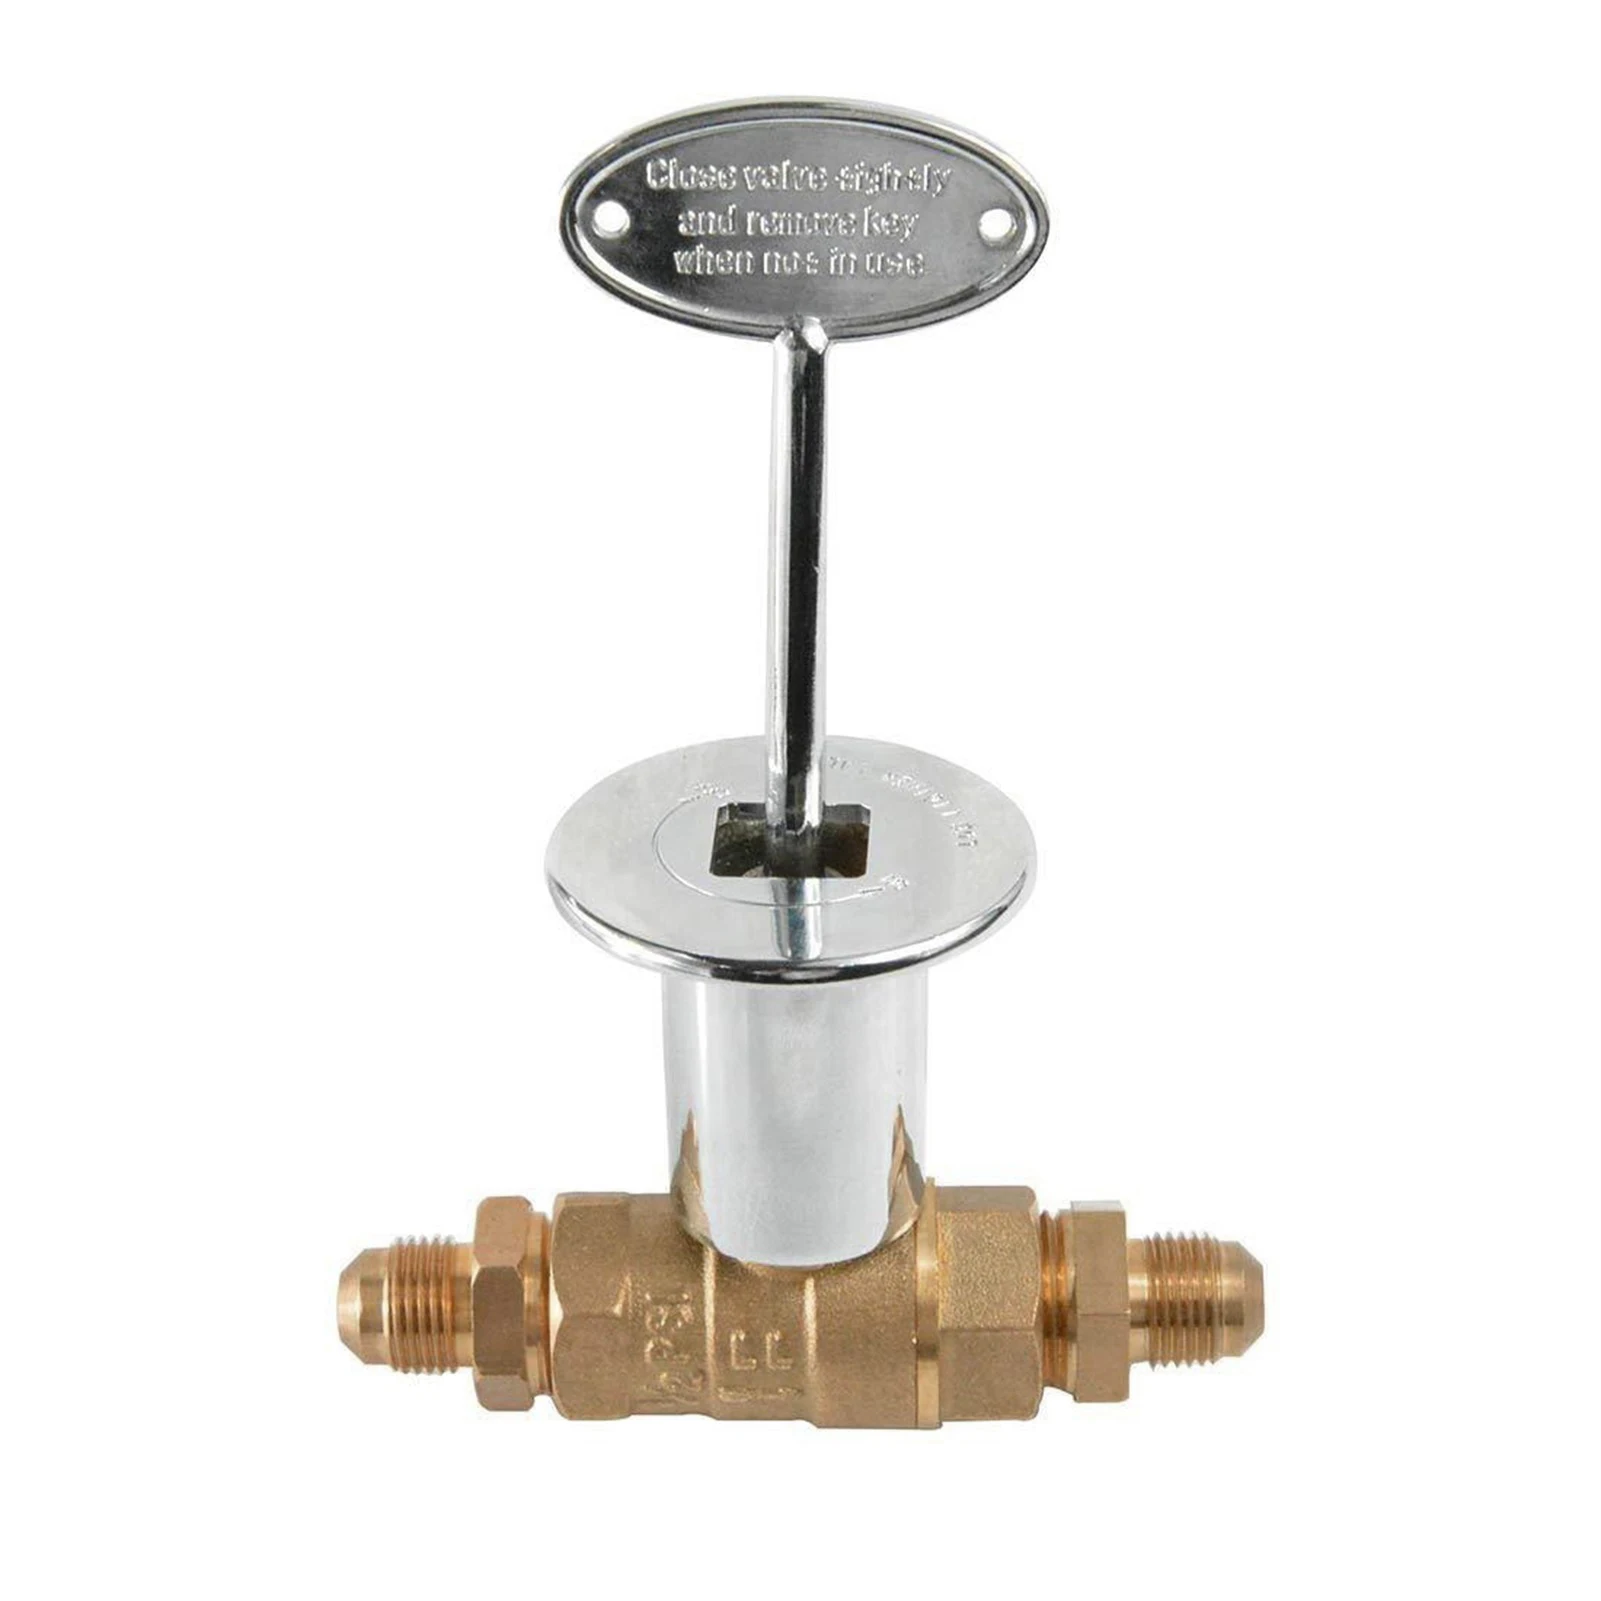 

Комплект ключей для прямого газового клапана 1/2 дюйма, комплект запорных клапанов для камина, включает 3-дюймовый ключ для камина, мужской ра...